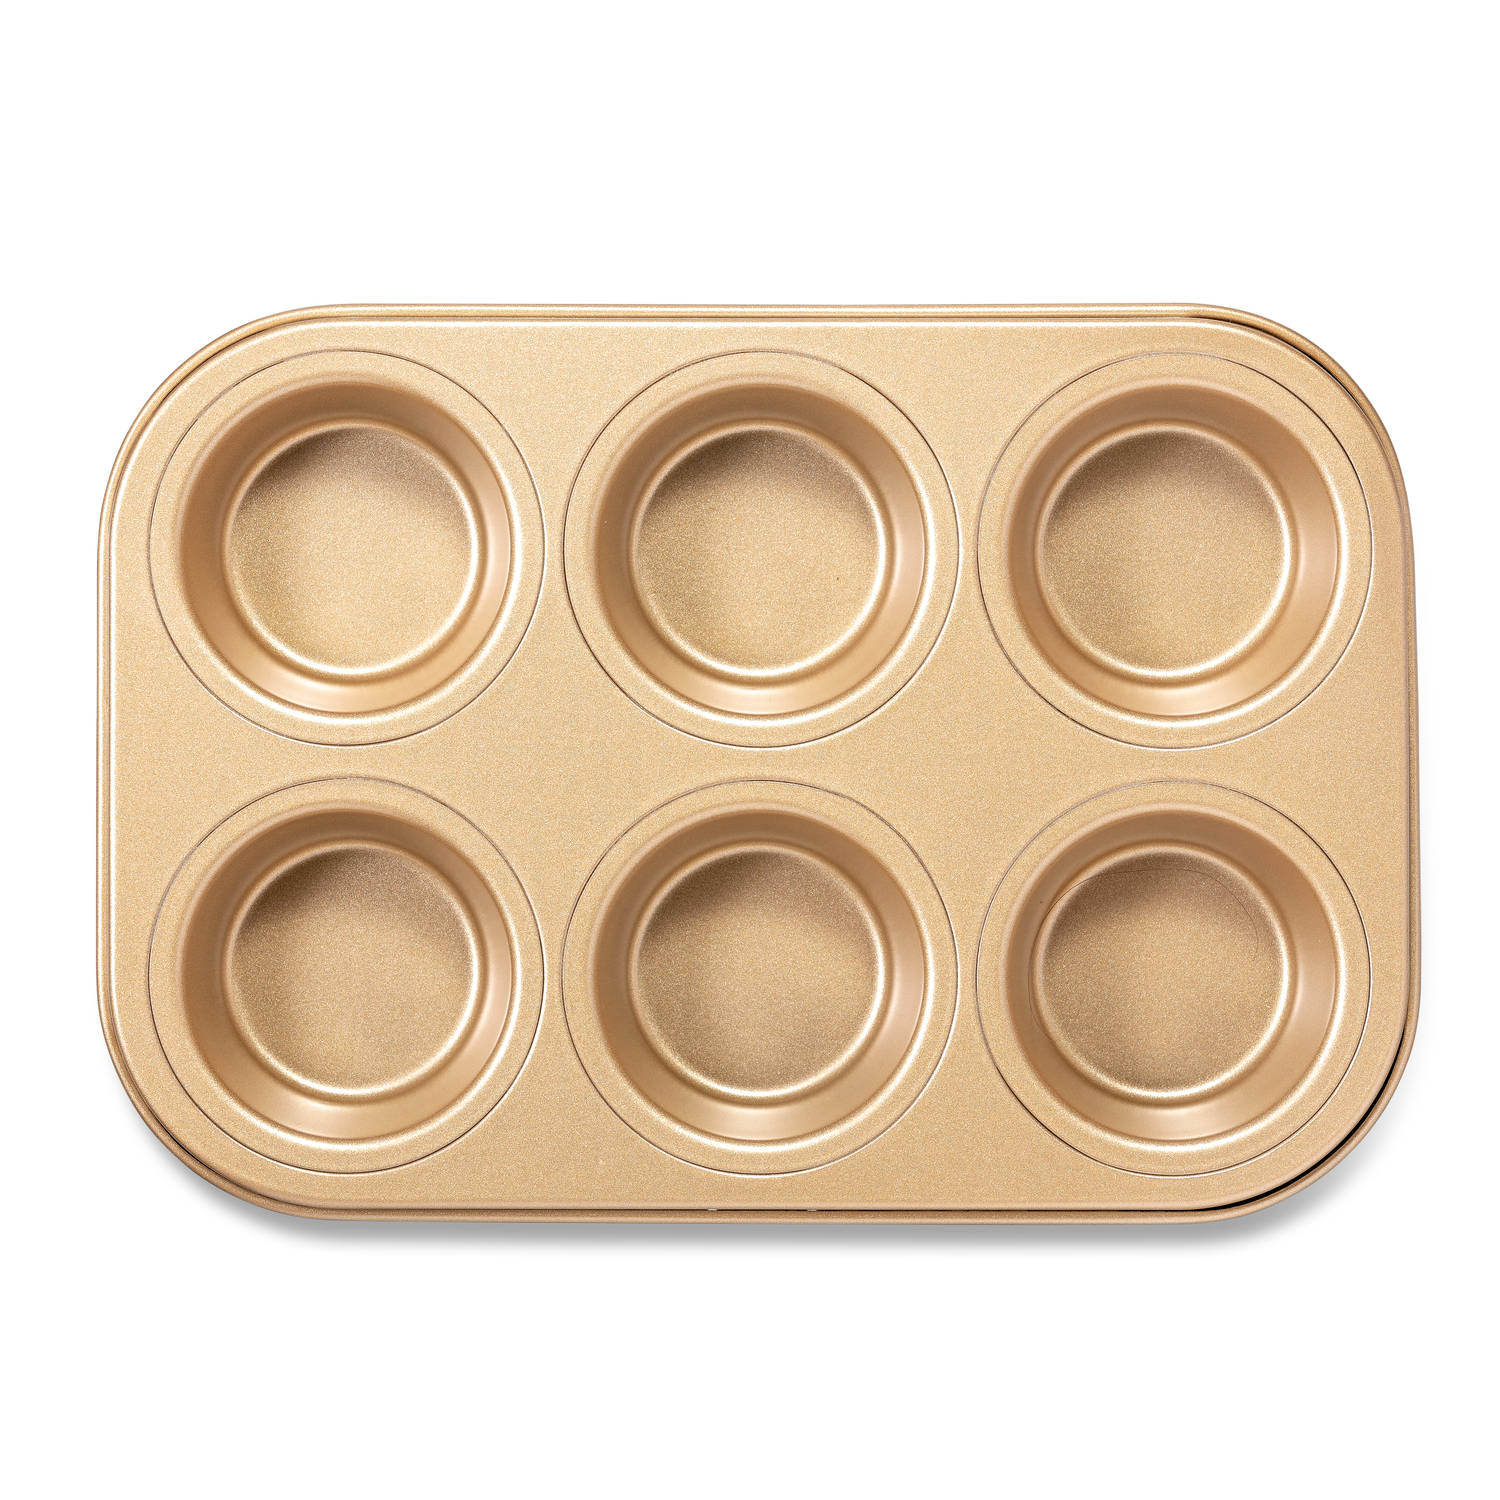 Preek vergaan Begeleiden Blokker muffinvorm 6 stuks - goudkleurig | Blokker